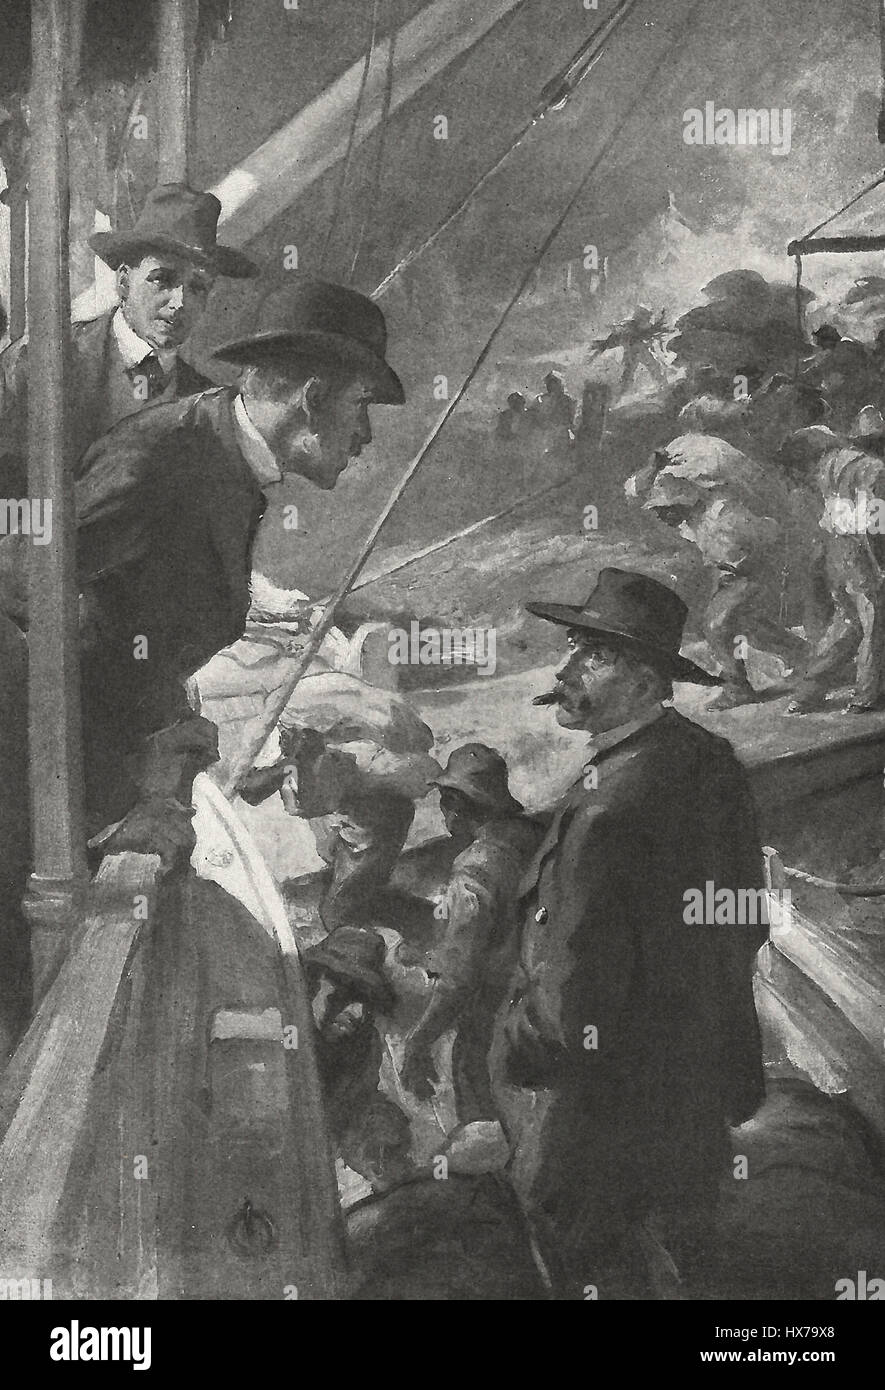 Los pasajeros hablando mientras se carga una barca, circa 1900 Foto de stock